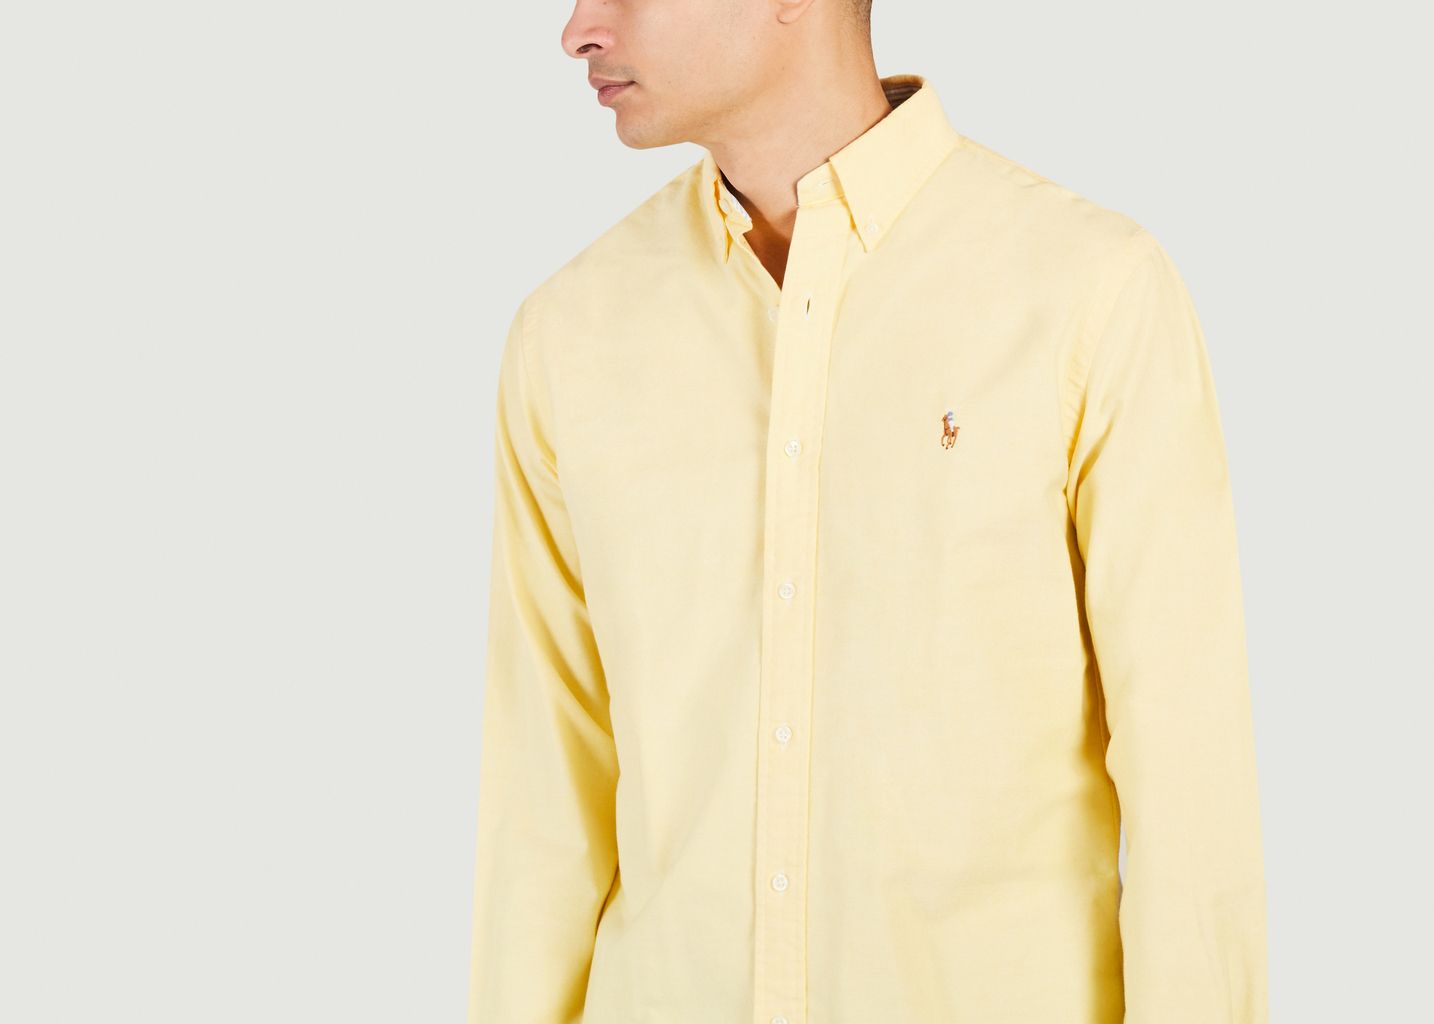 Eng anliegendes Oxford-Hemd  - Polo Ralph Lauren